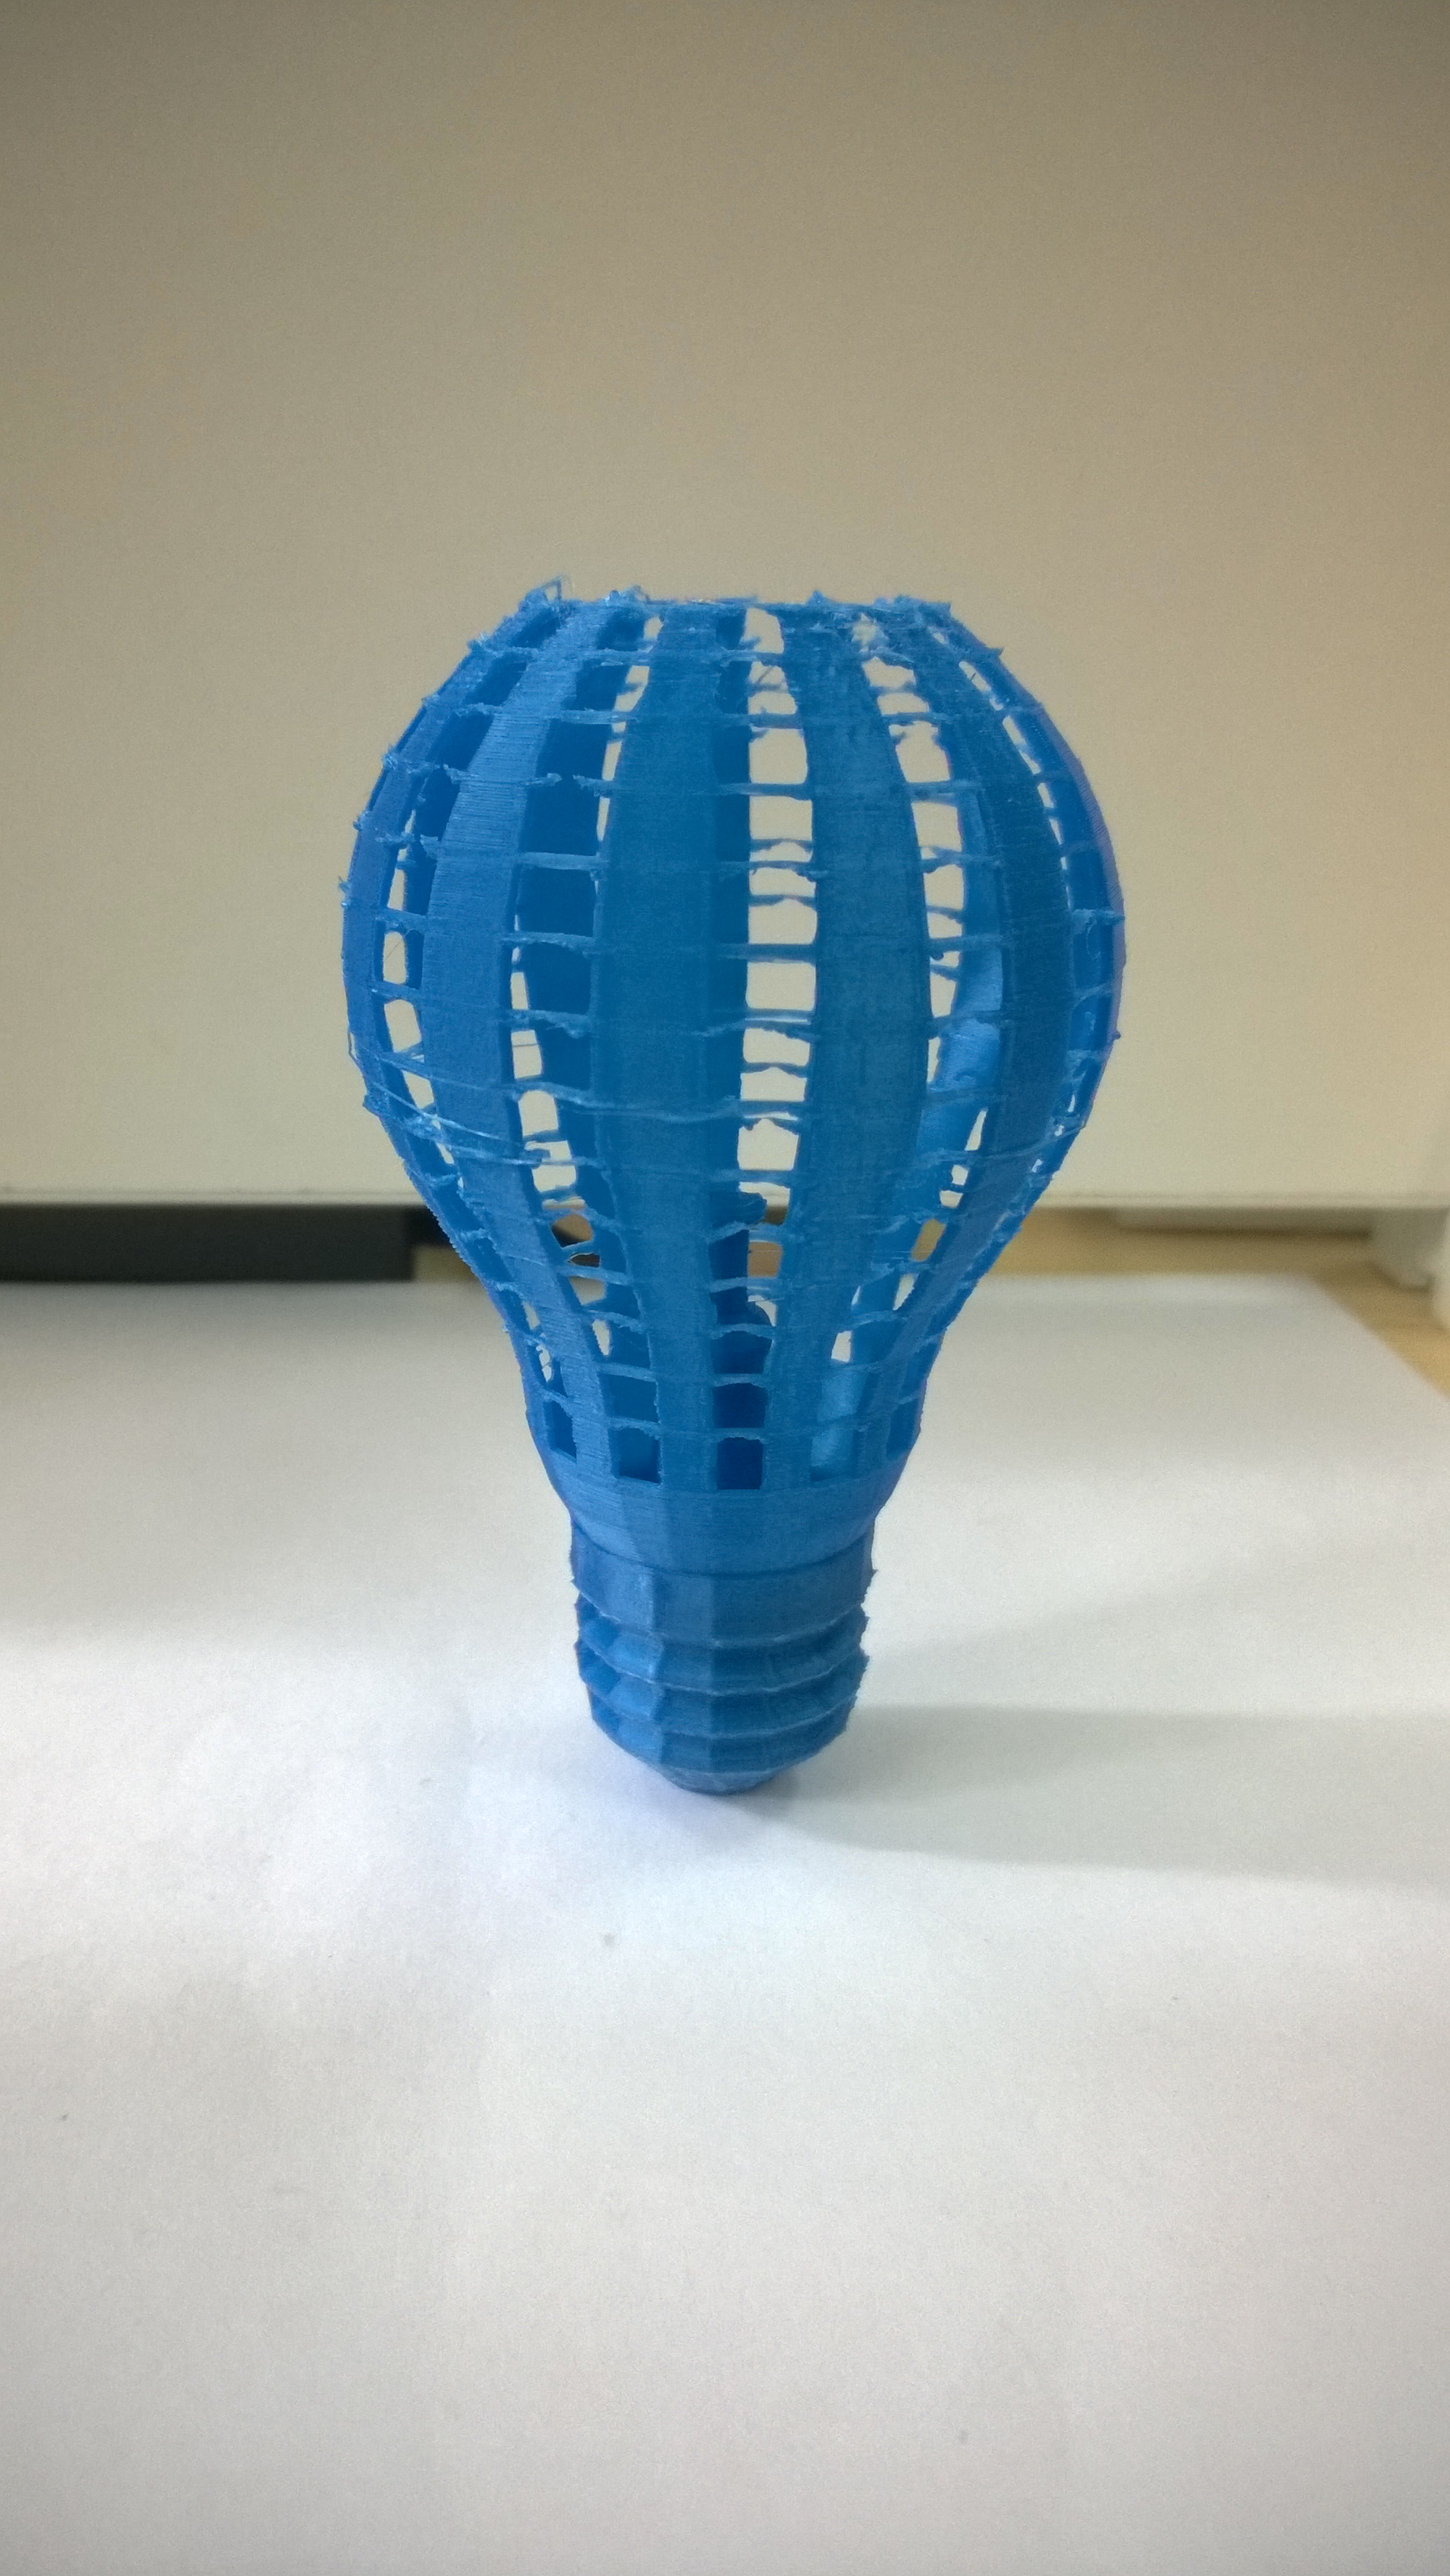 创意灯泡设计3D打印模型,创意灯泡设计3D模型下载,3D打印创意灯泡设计模型下载,创意灯泡设计3D模型,创意灯泡设计STL格式文件,创意灯泡设计3D打印模型免费下载,3D打印模型库